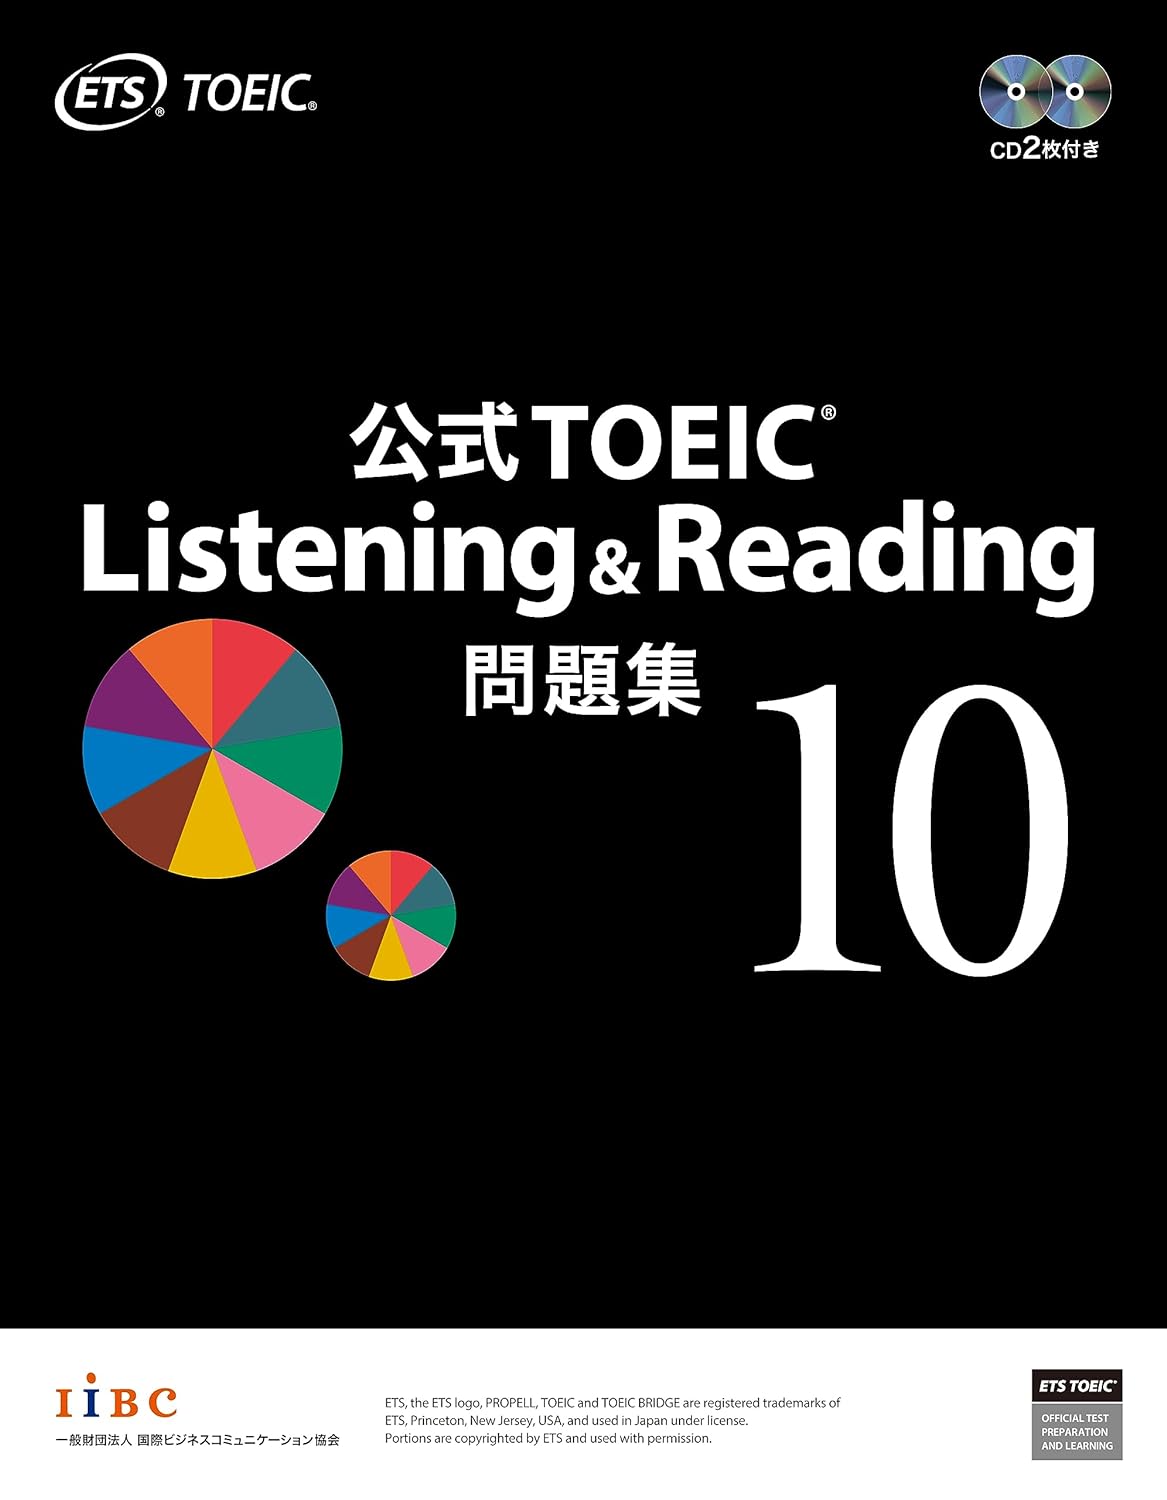 公式TOEIC Listening & Reading 問題集を使った学習 – 公式問題集2冊 